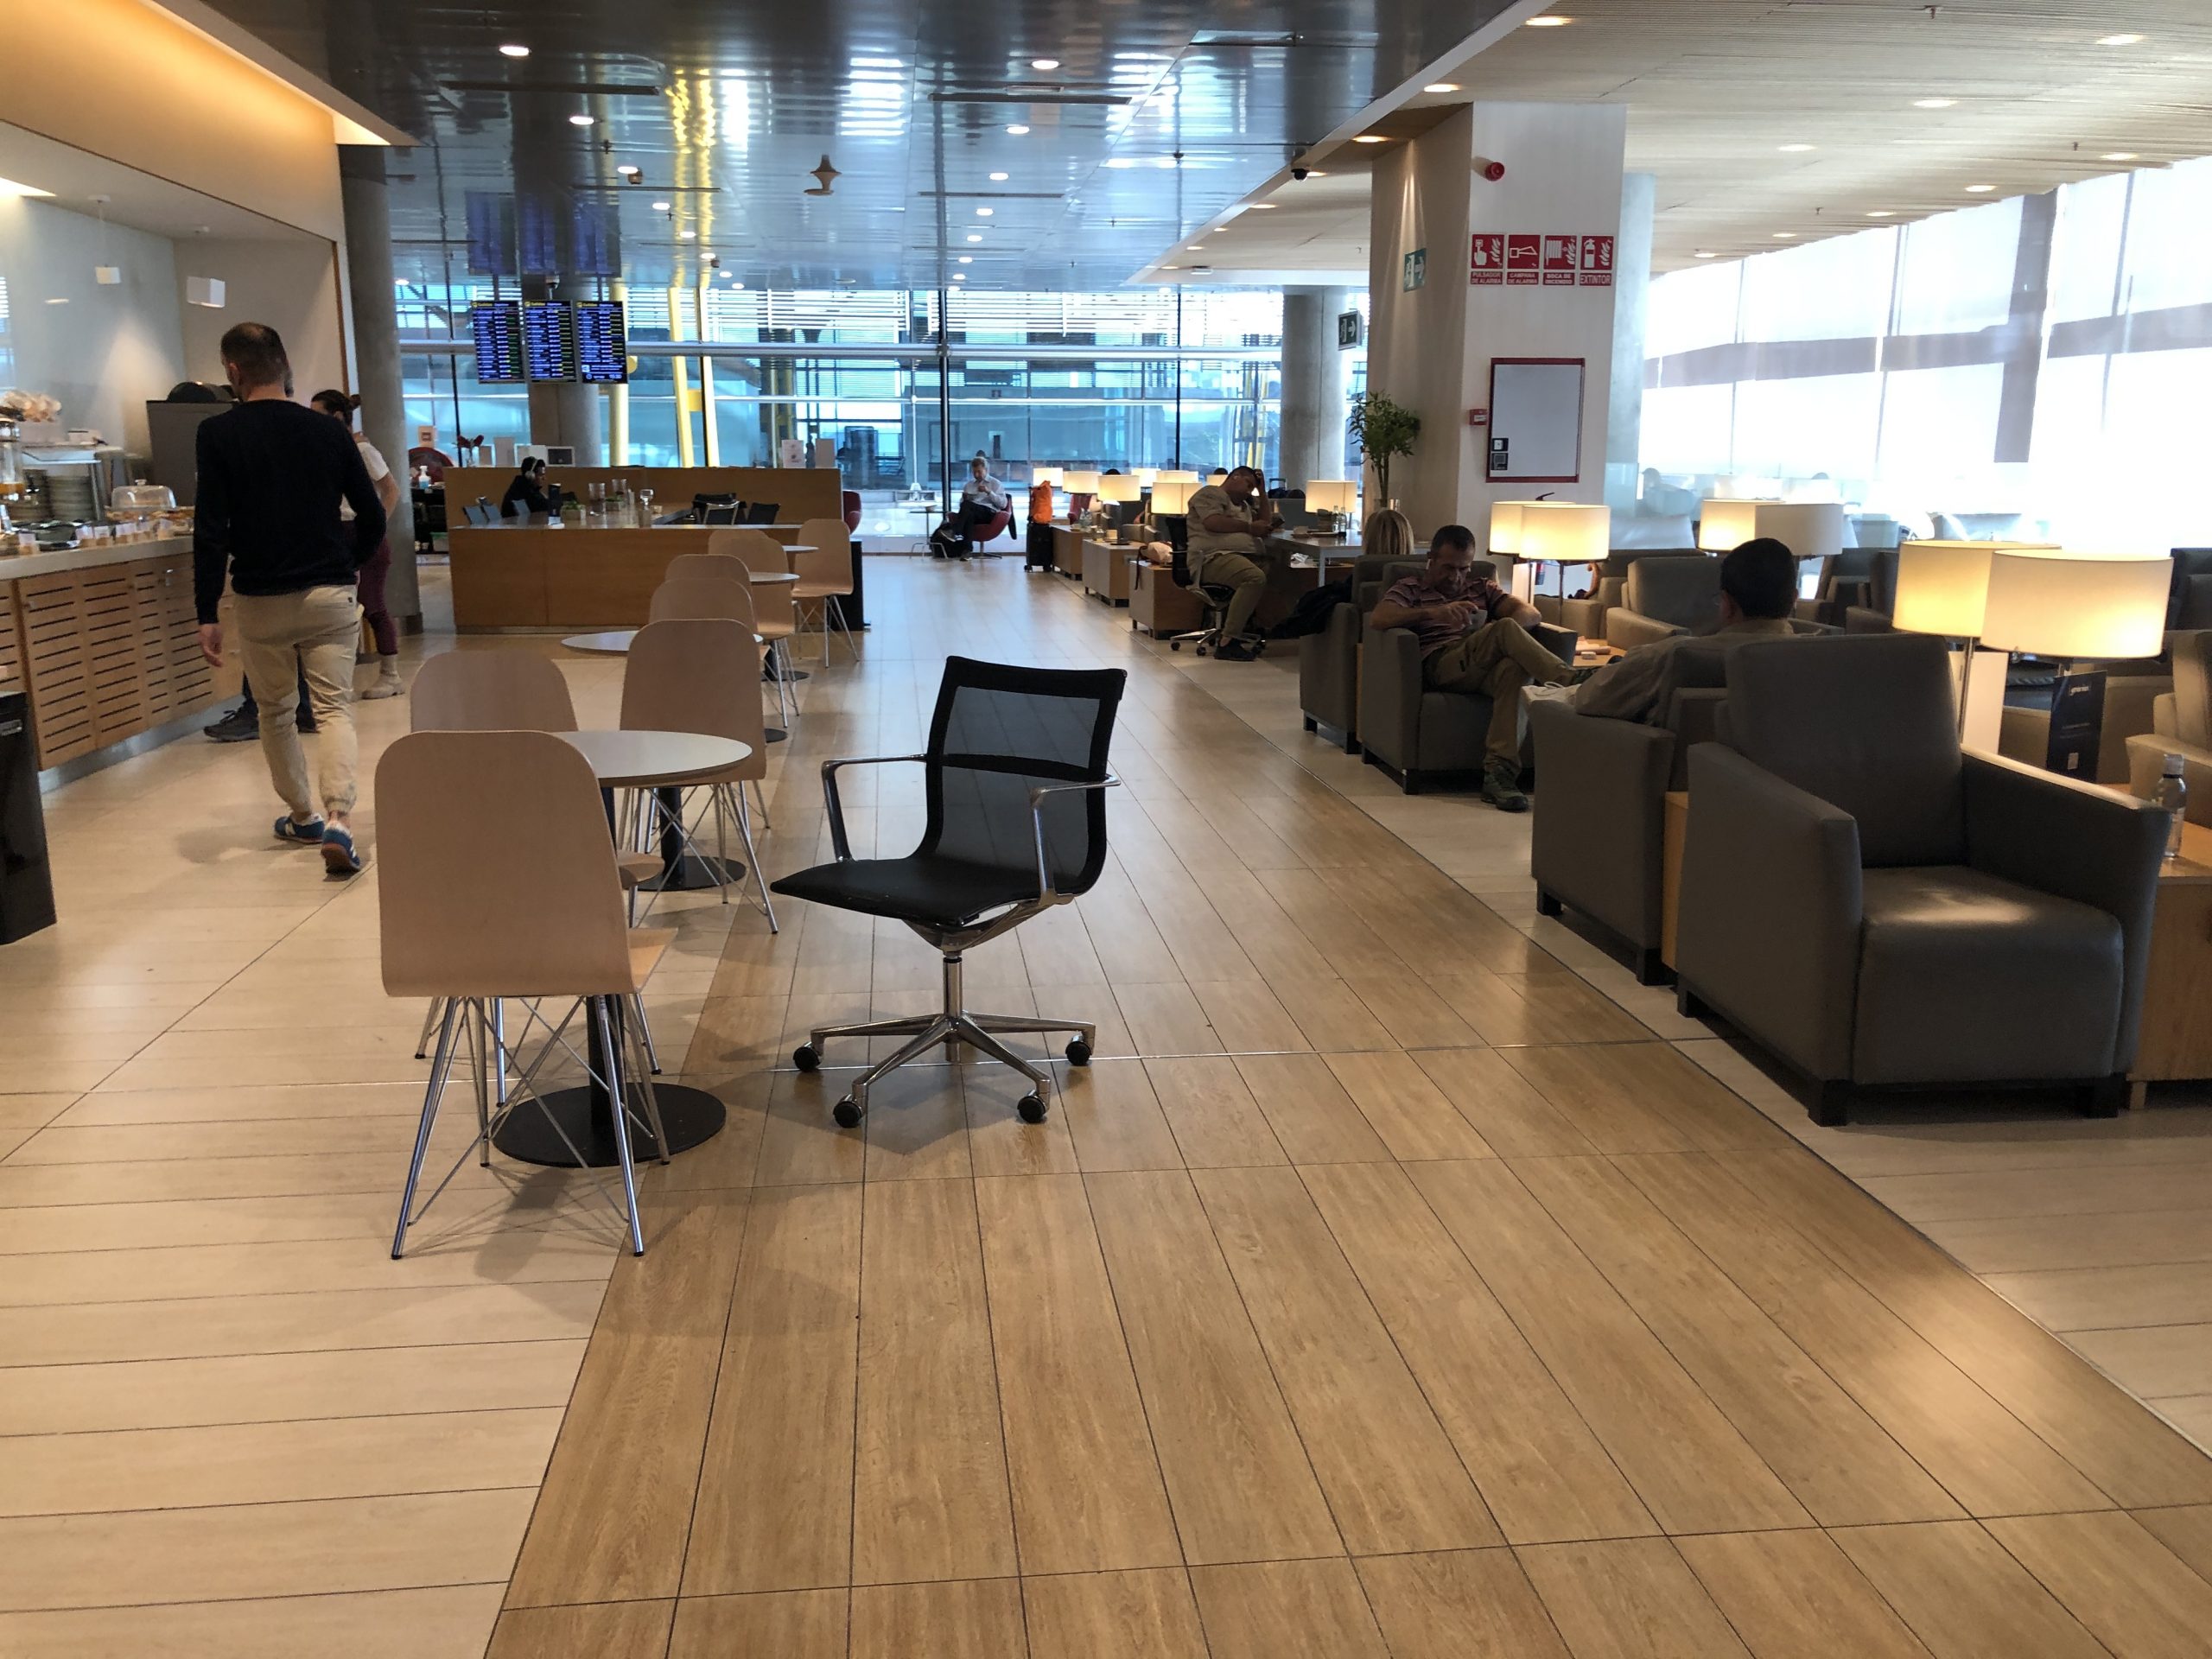 Lounge Review : マドリード空港(MAD) ターミナル4 シェンゲン内ラウンジ「Plaza Mayor」